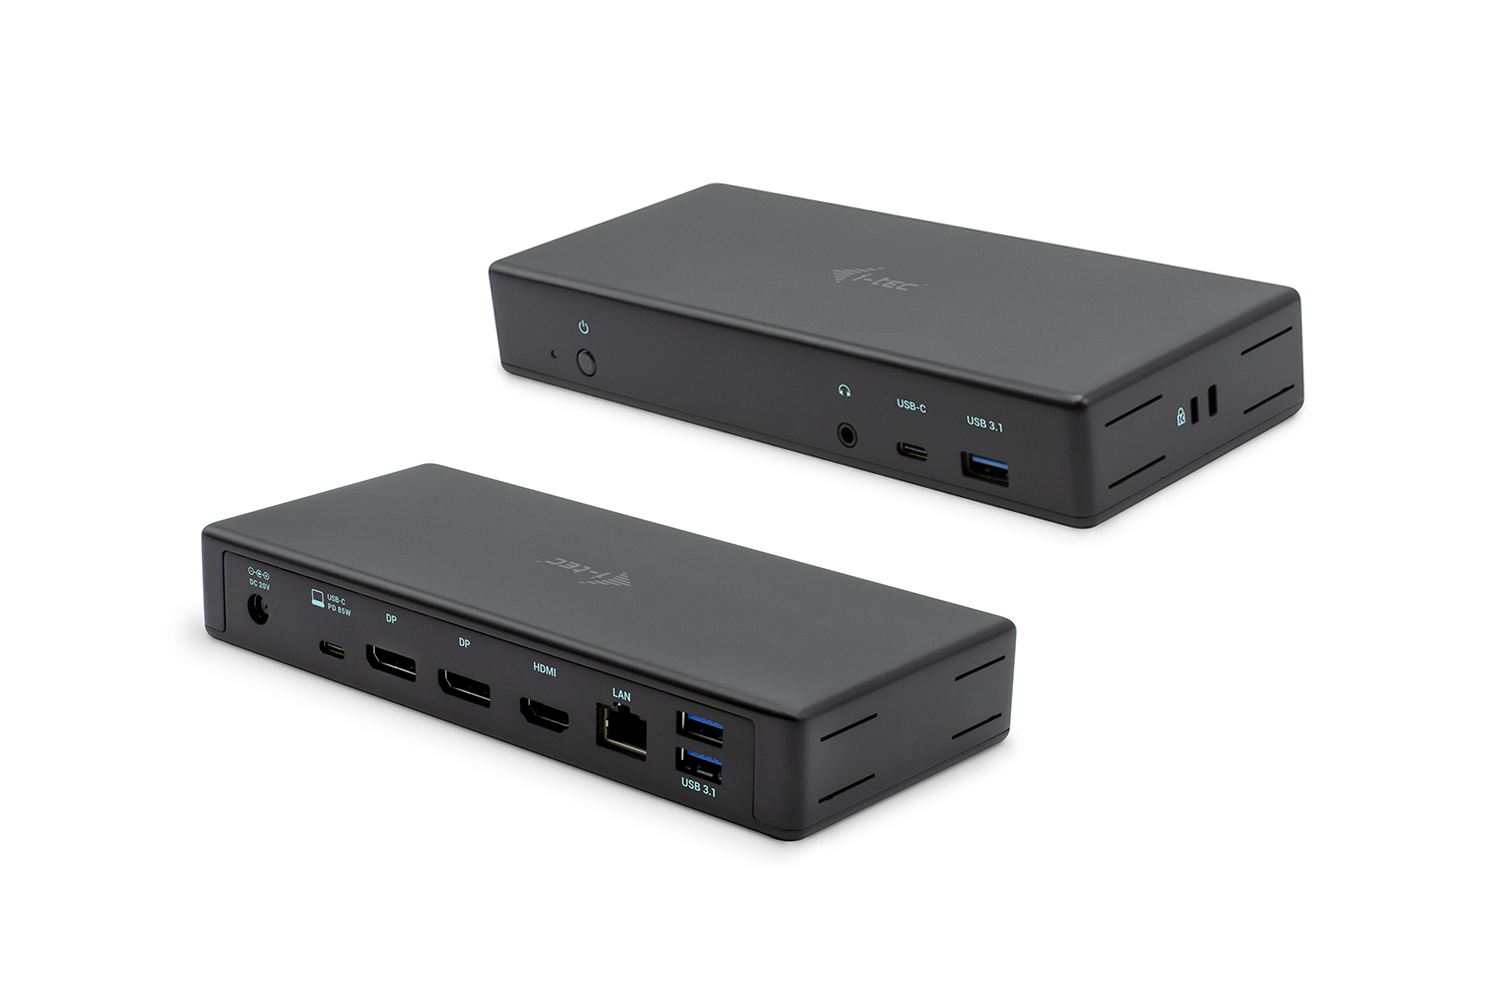  USB-C/Thunderbolt 3 Triple Display Docking Station 2x DP 1x HDMI 1x GLAN 3x USB 3.1 Gen2 1x USB-C Data 1x Audio/Mic 85W PD KL